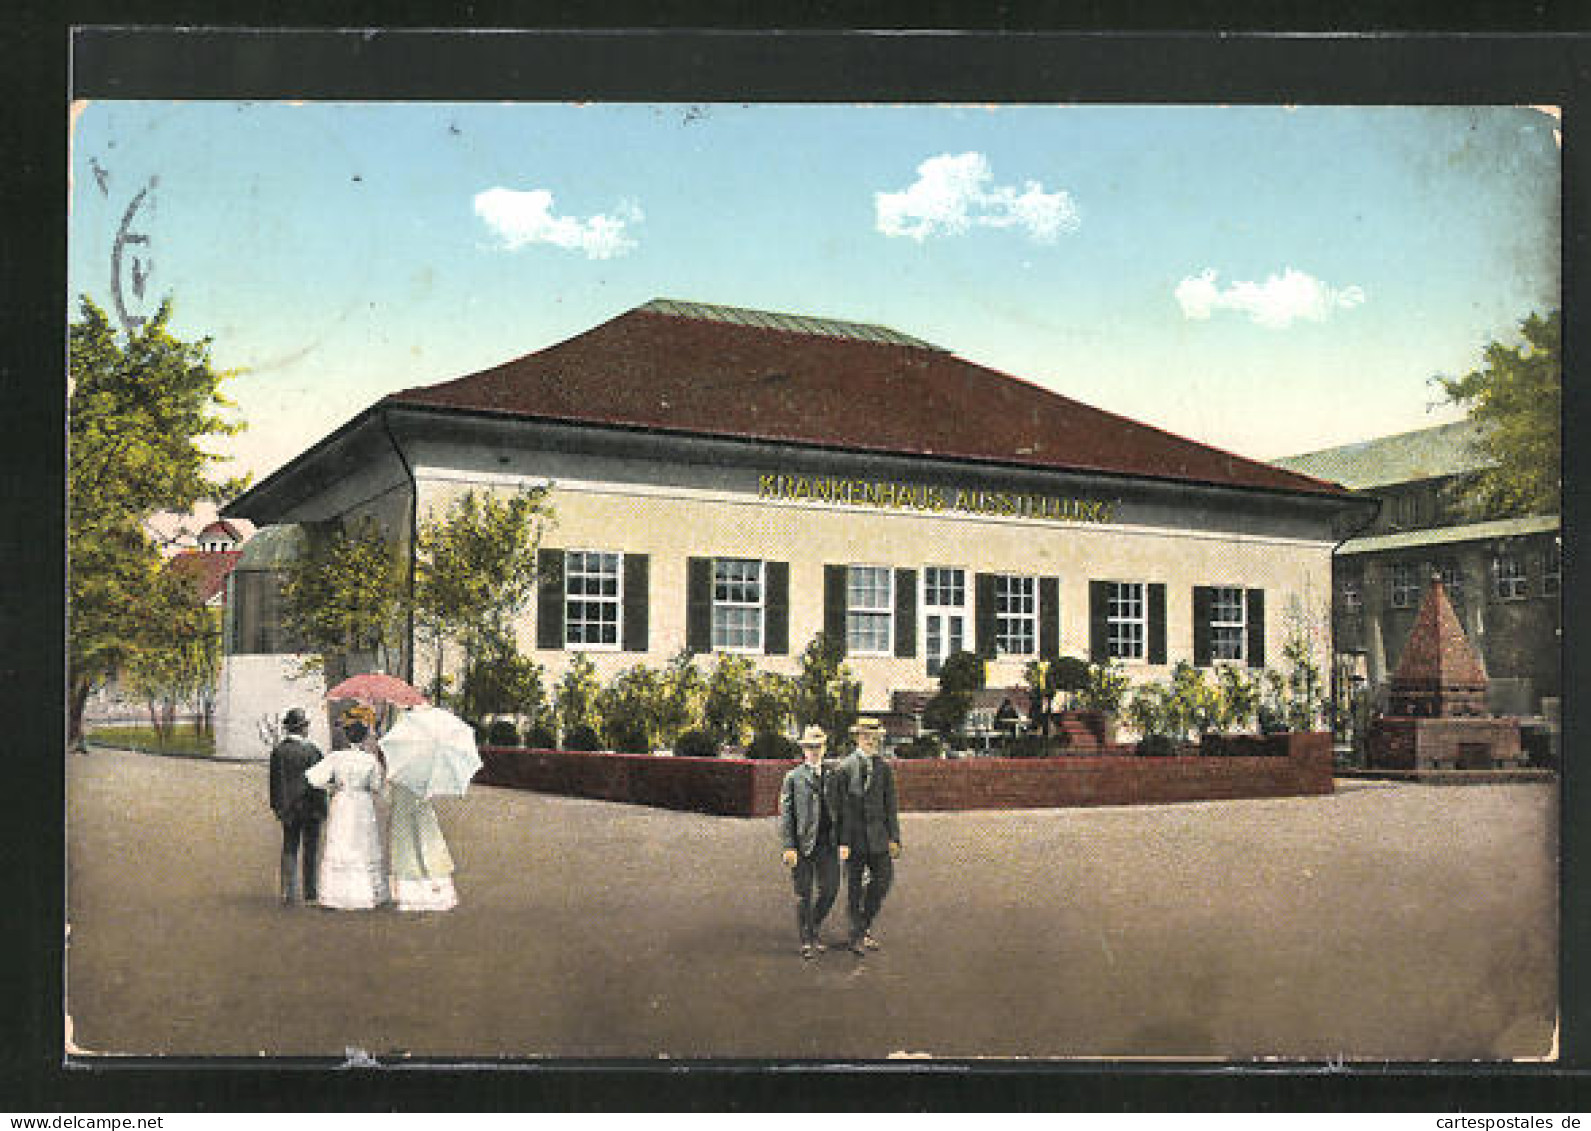 AK Leipzig, Internationale Baufachausstellung Mit Sonderausstellungen 1913, Sonderausstellung Für Krankenhausbau  - Ausstellungen